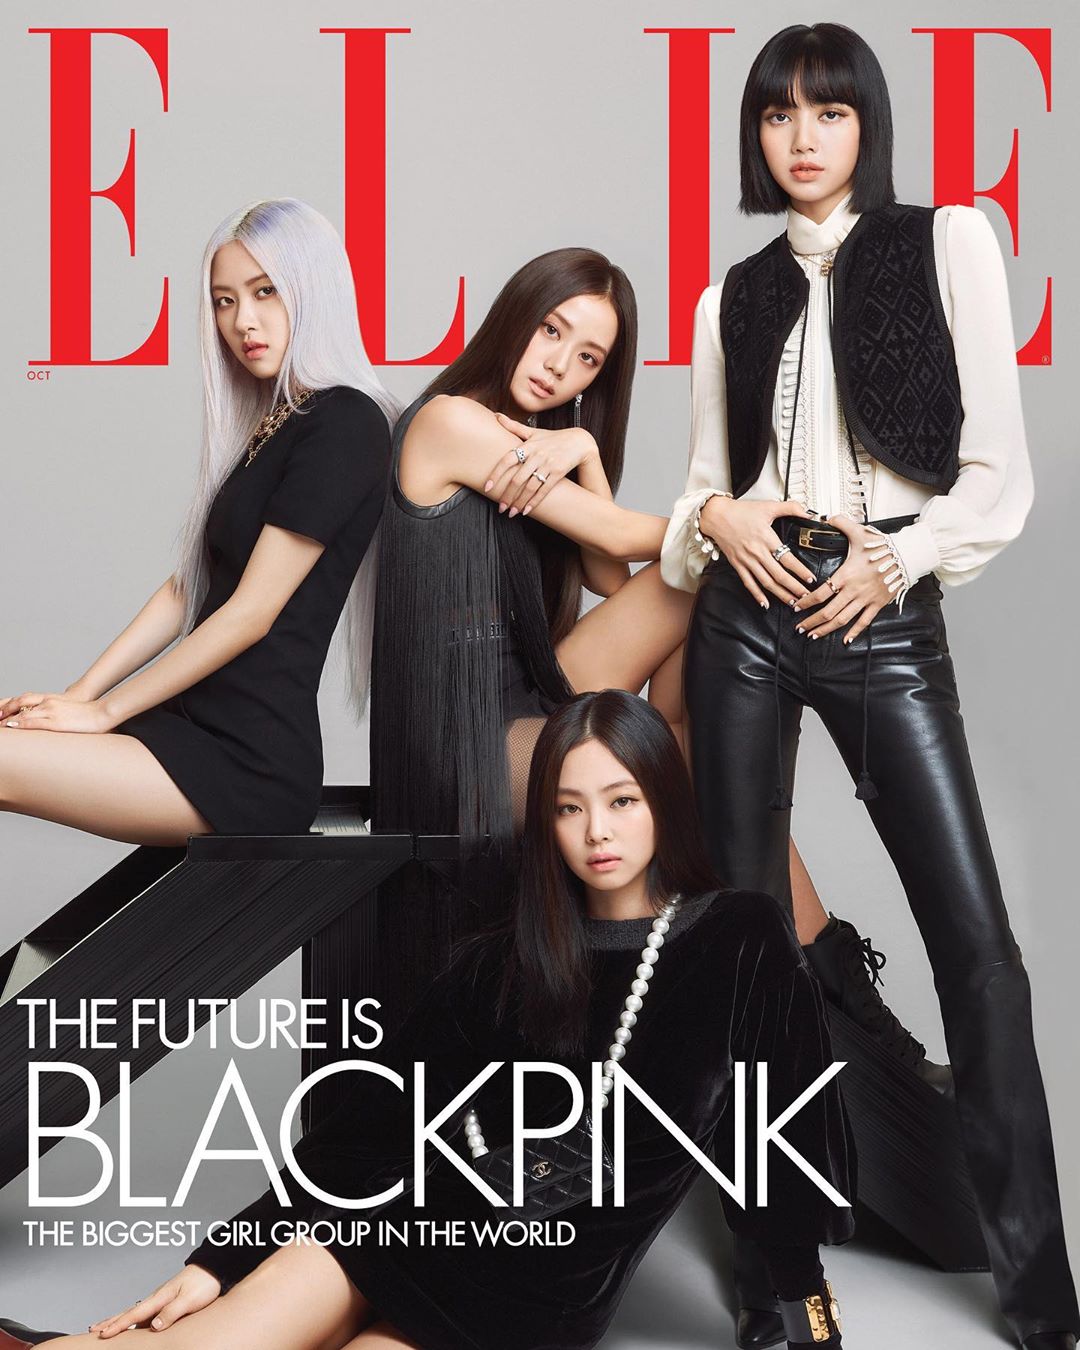 Blackpink vừa xuất hiện trên bìa tạp chí Elle Mỹ với trang phục nổi bật và đắt giá. Nếu bạn là fan hâm mộ của nhóm nhạc này, đừng bỏ qua bộ ảnh này để thấy một phiên bản thời trang đẹp mắt của Blackpink.